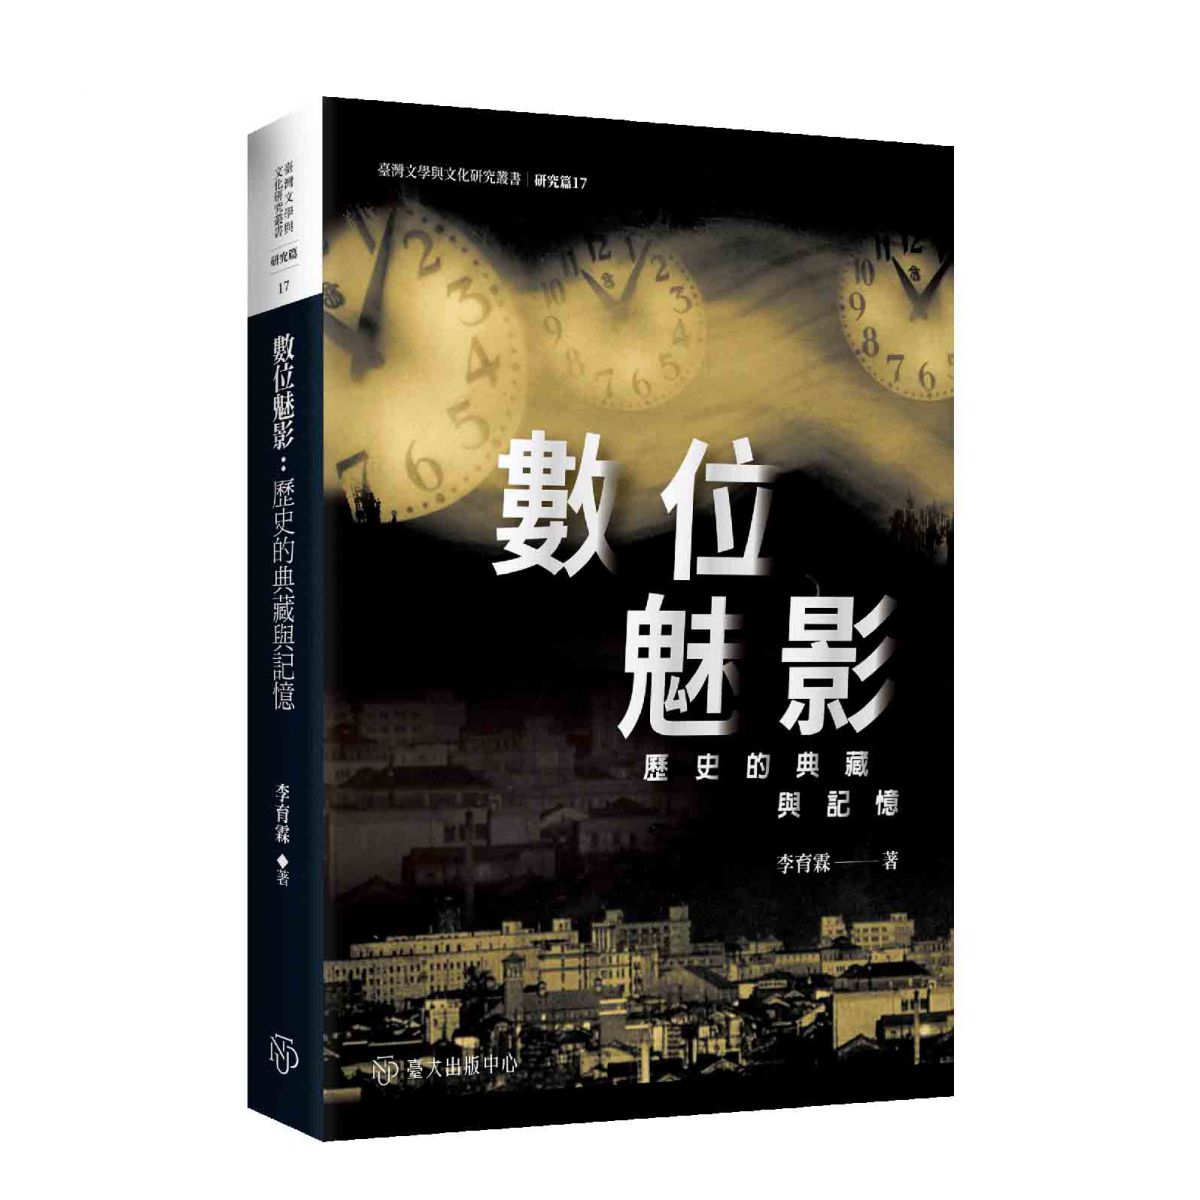 《數位魅影──歷史的典藏與記憶》關懷臺灣當代數位文化生產，討論其體制與文化邏輯